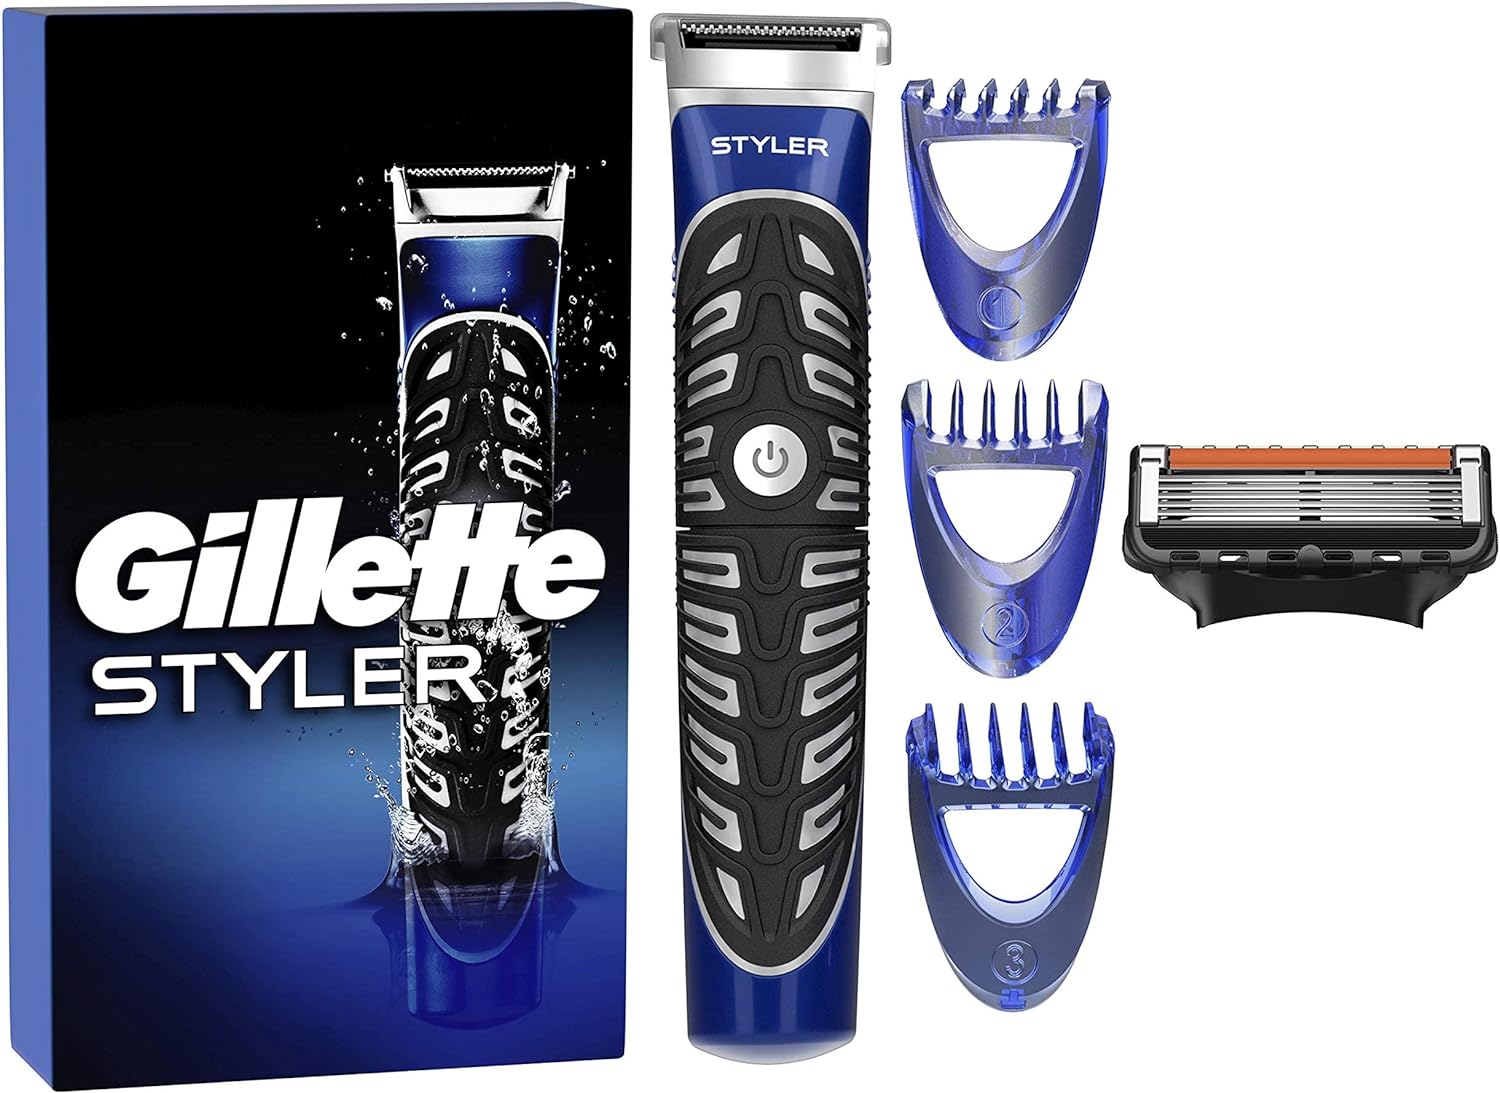 Gillette Fusion Rasoio Styler 4in1 Regolabarba 3 Regolazioni Impugnatura Comoda.